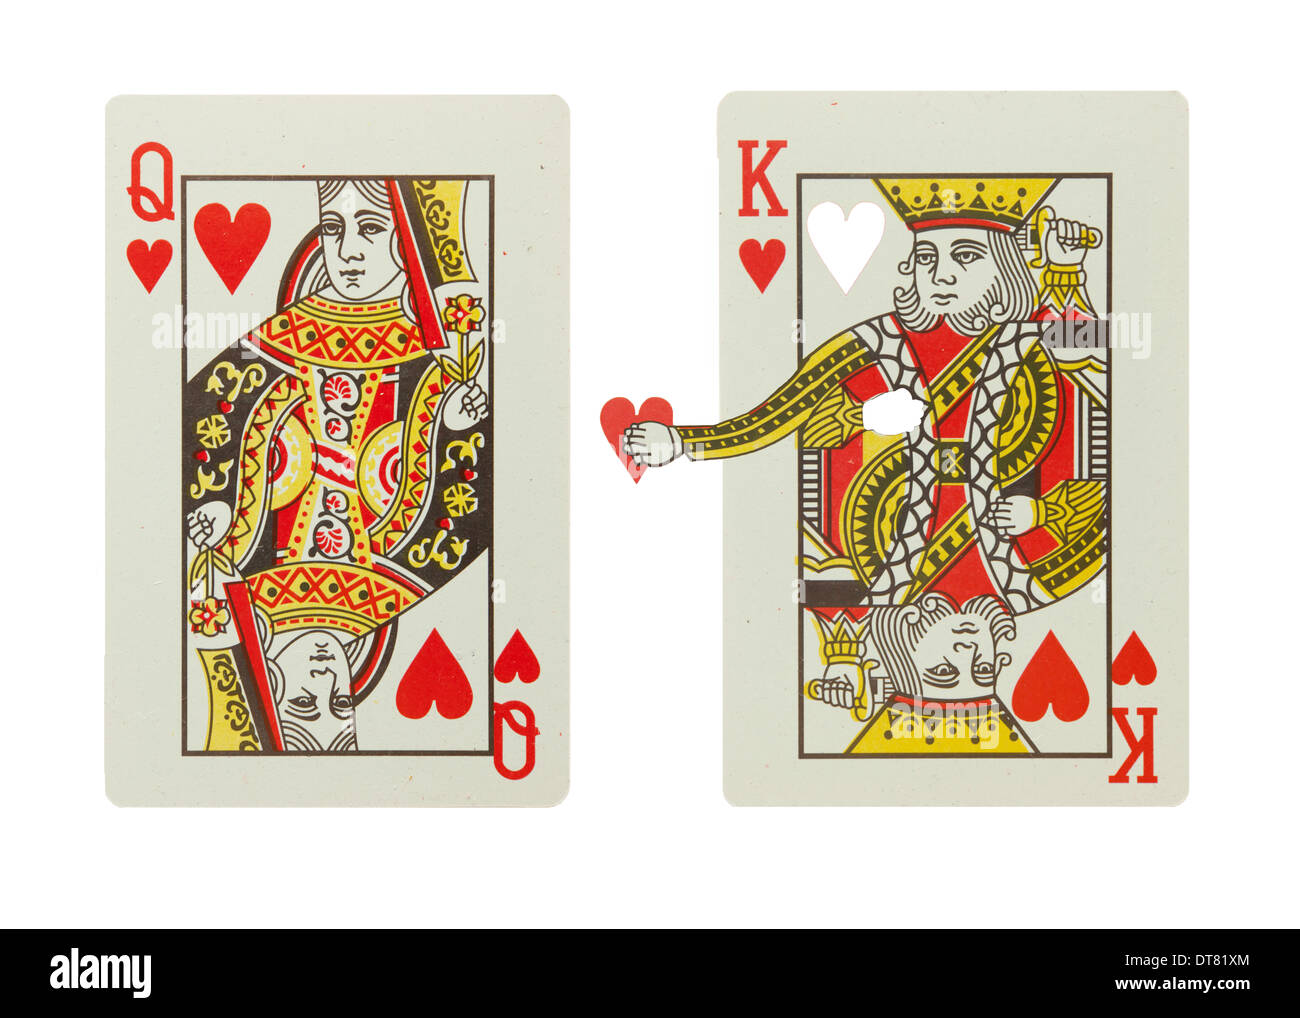 King Card Stock Photos King Card Stock Images Alamy